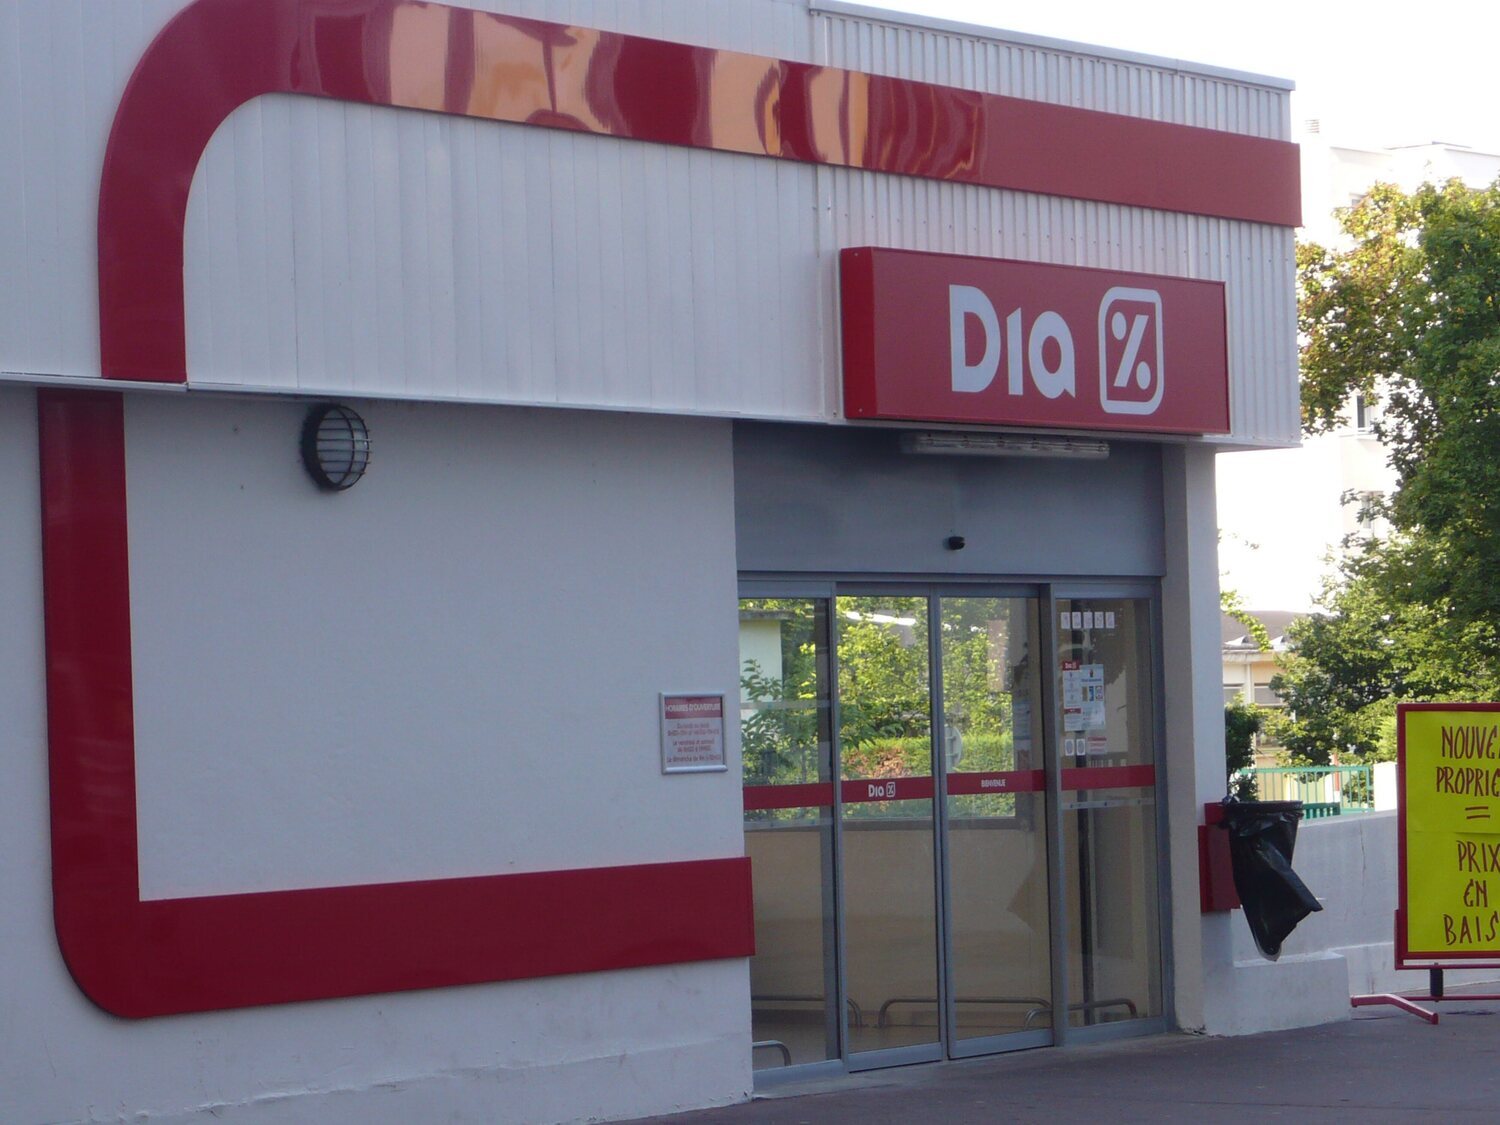 Liquidación de supermercados DIA en España: vacía tiendas, que reabrirán con otra marca